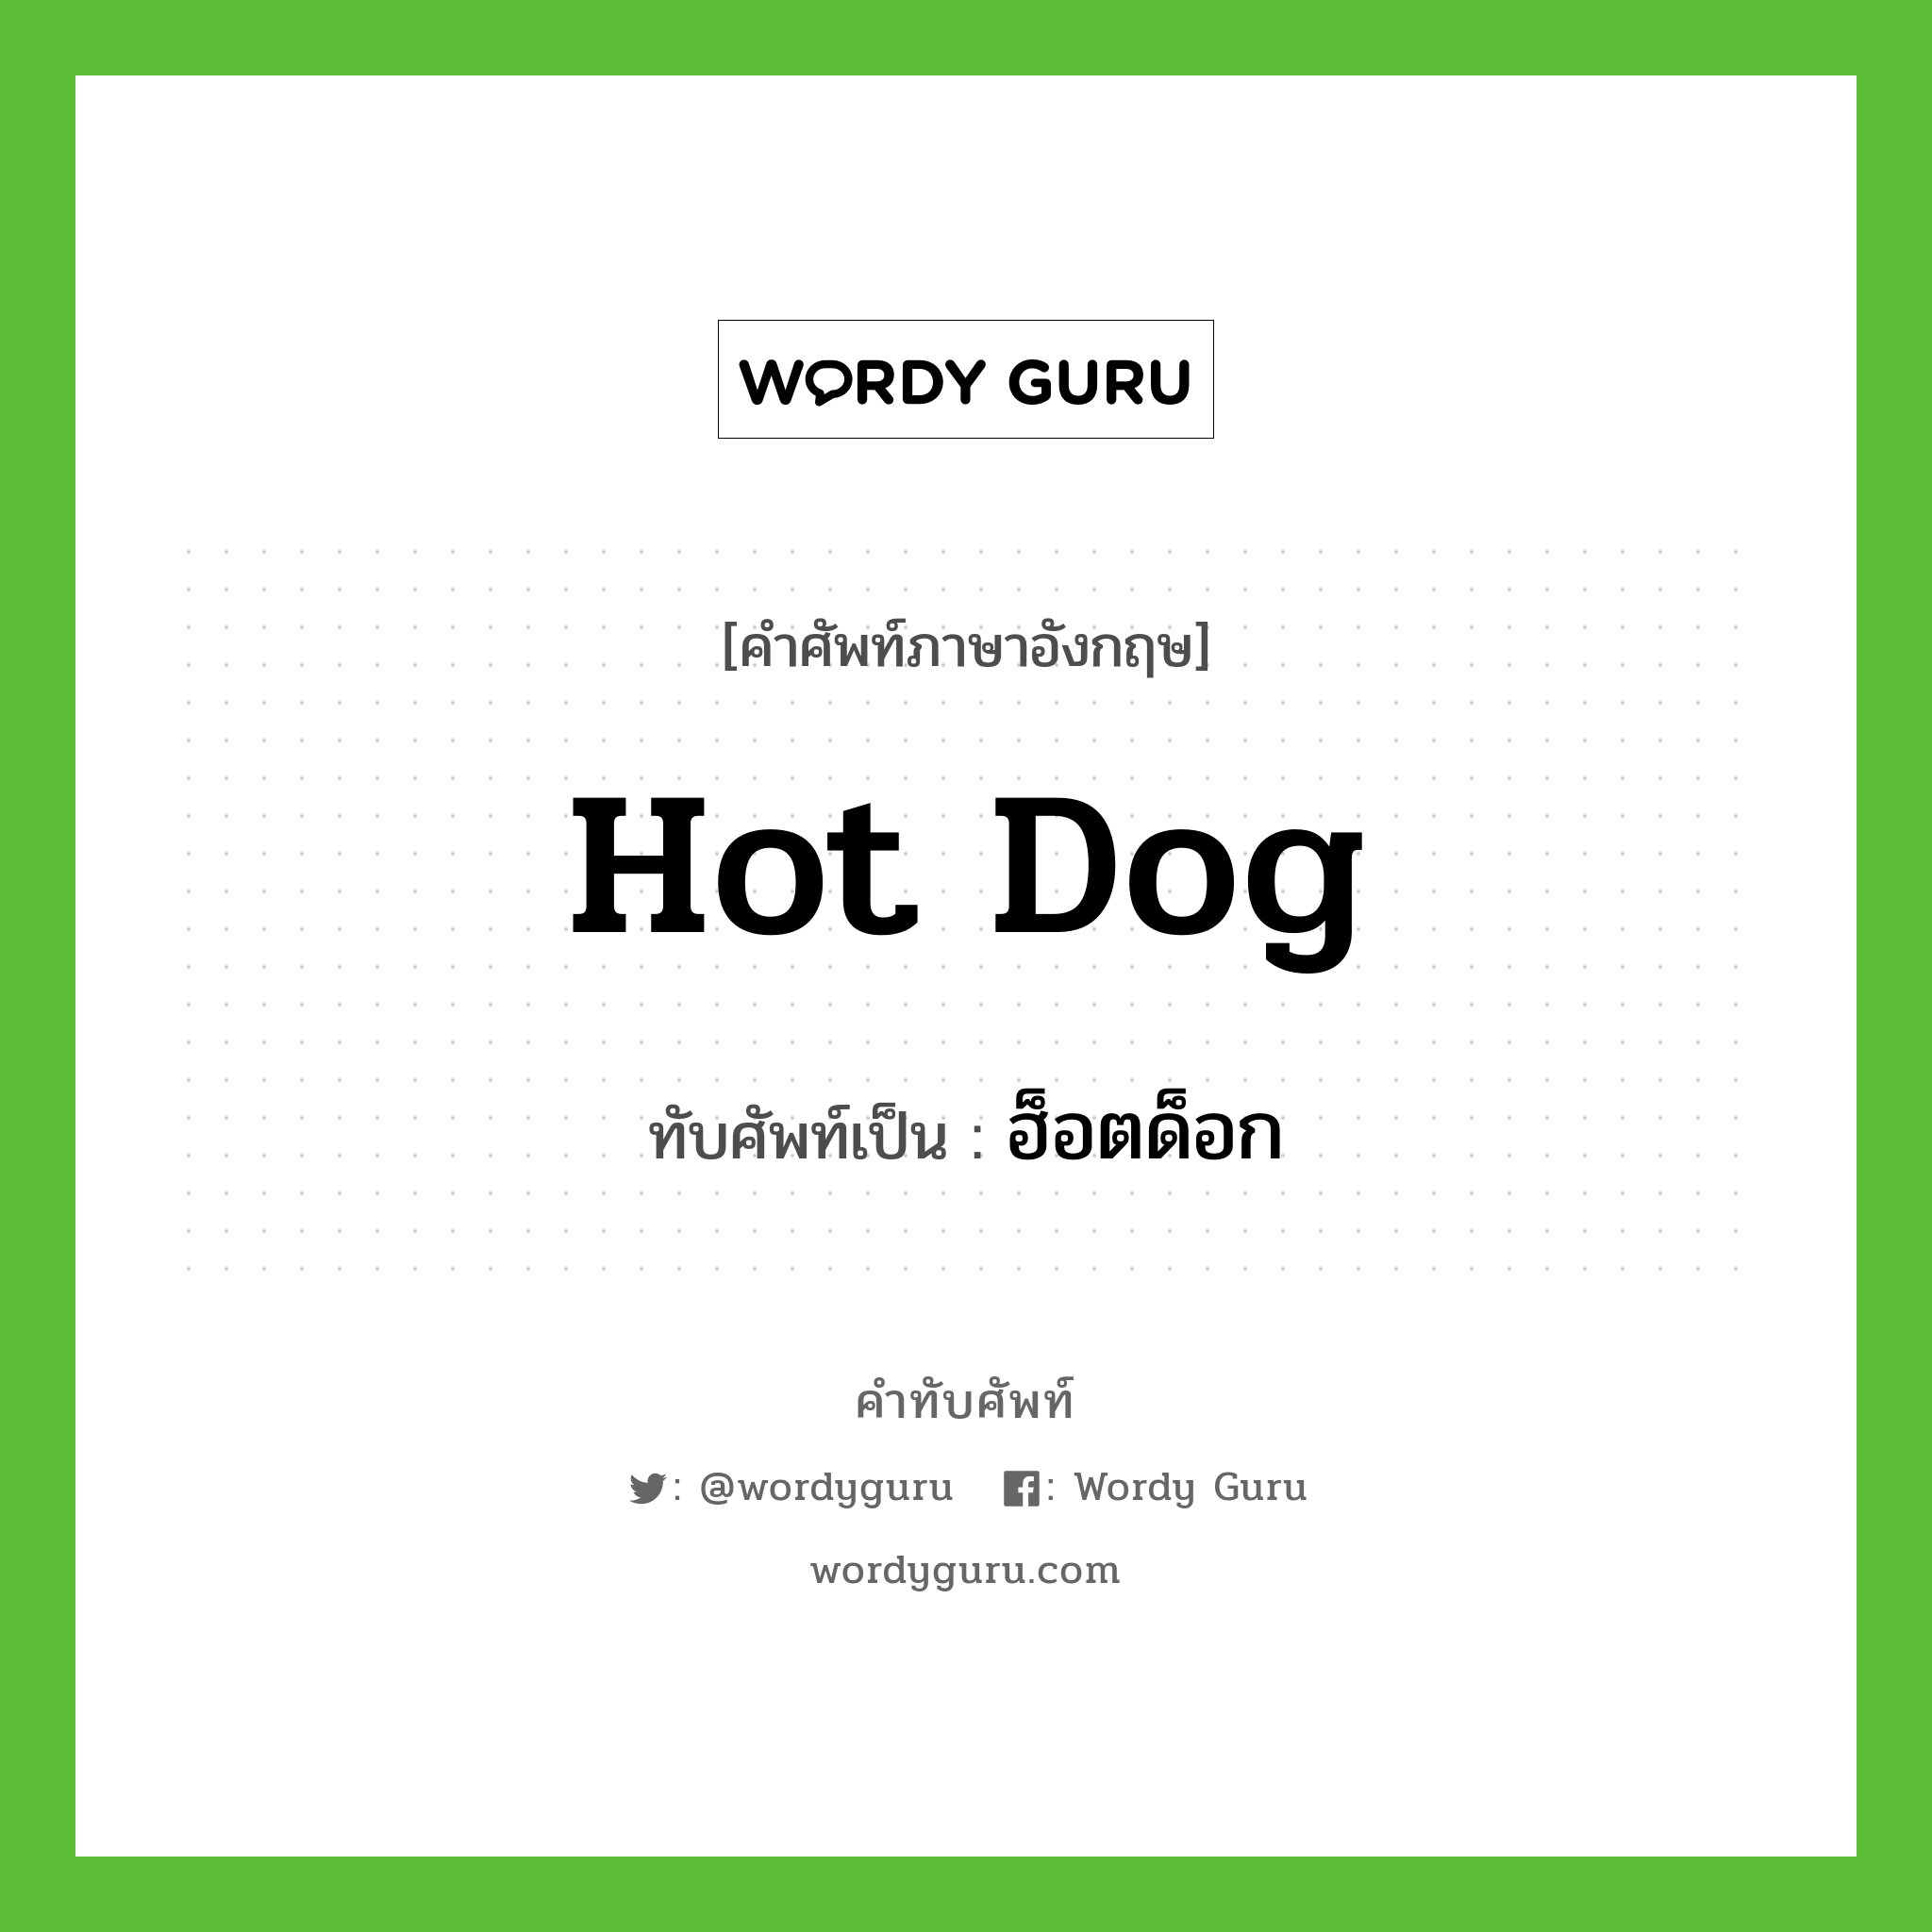 hot dog เขียนเป็นคำไทยว่าอะไร?, คำศัพท์ภาษาอังกฤษ hot dog ทับศัพท์เป็น ฮ็อตด็อก